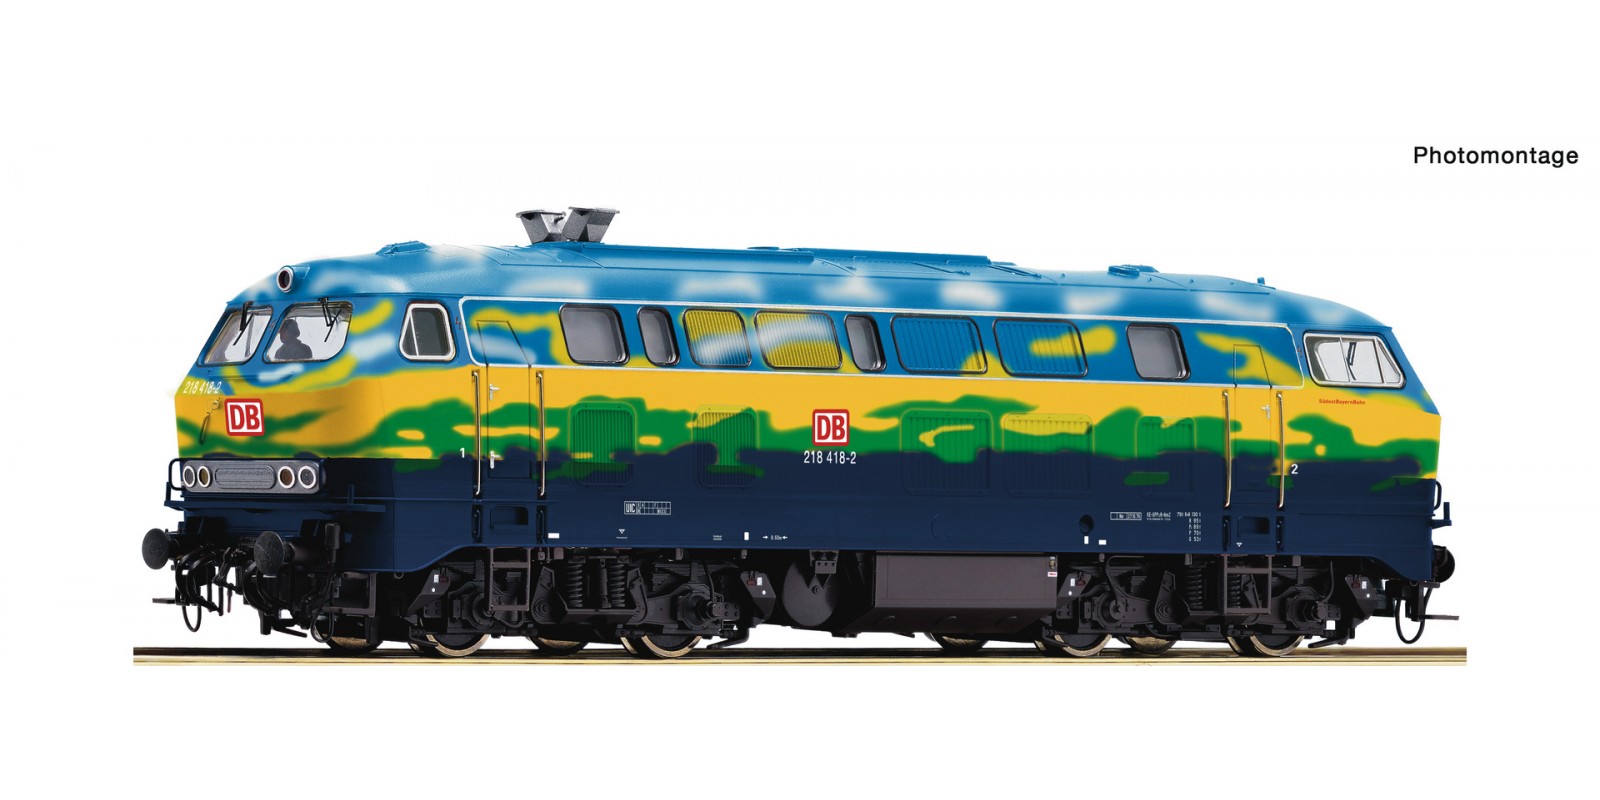 RO78758 Diesel locomotive 218 418-2